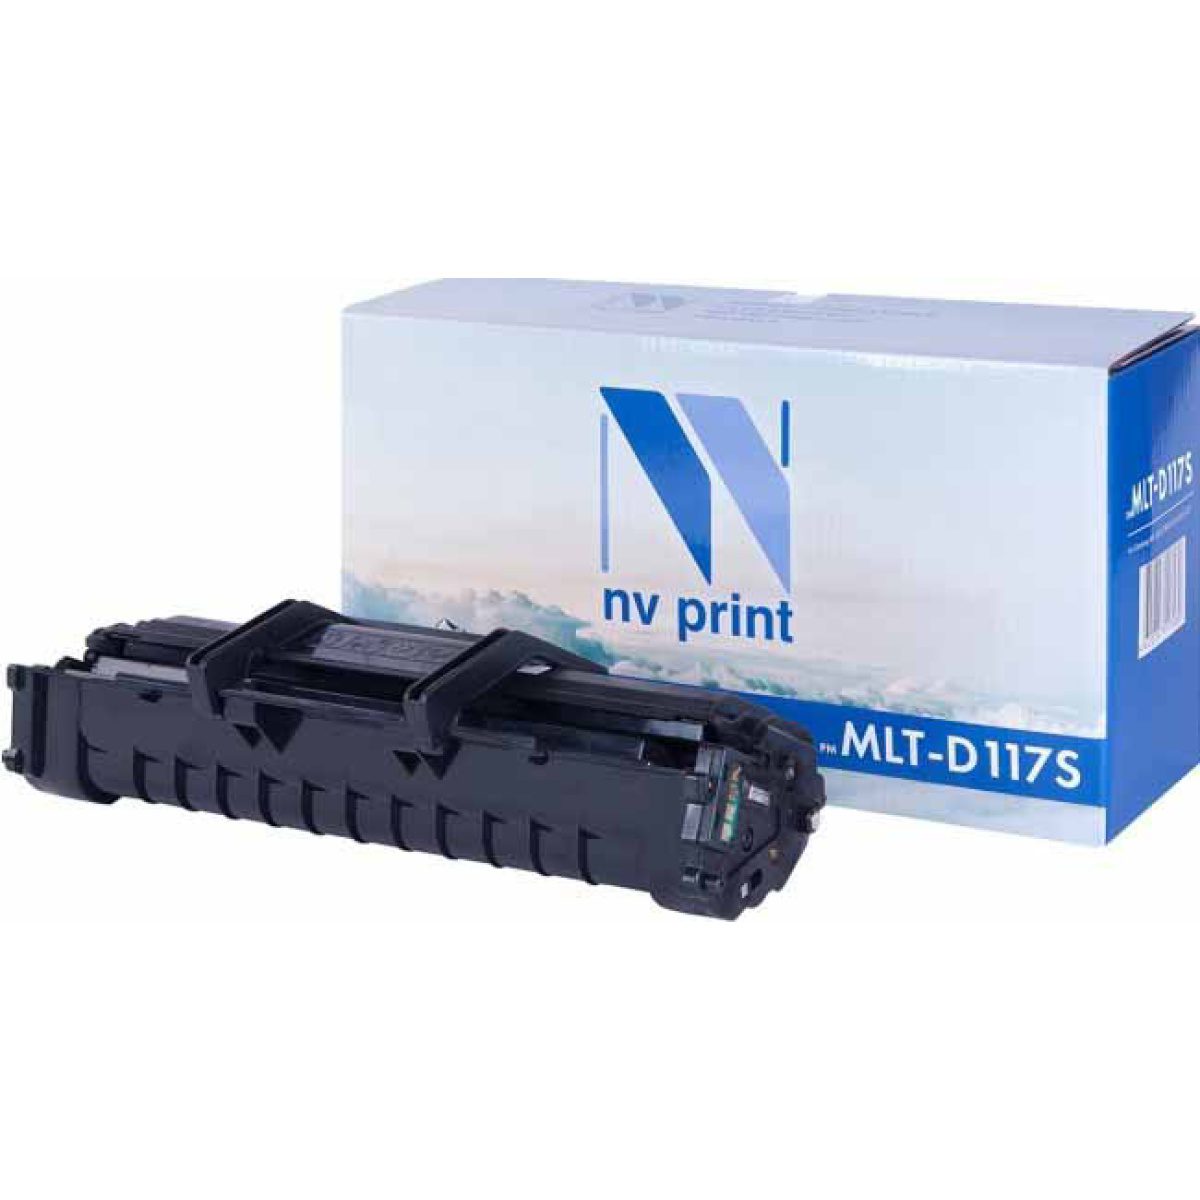 Купить картридж NV Print MLT-D117S черный по адекватной цене — Digit-Mall